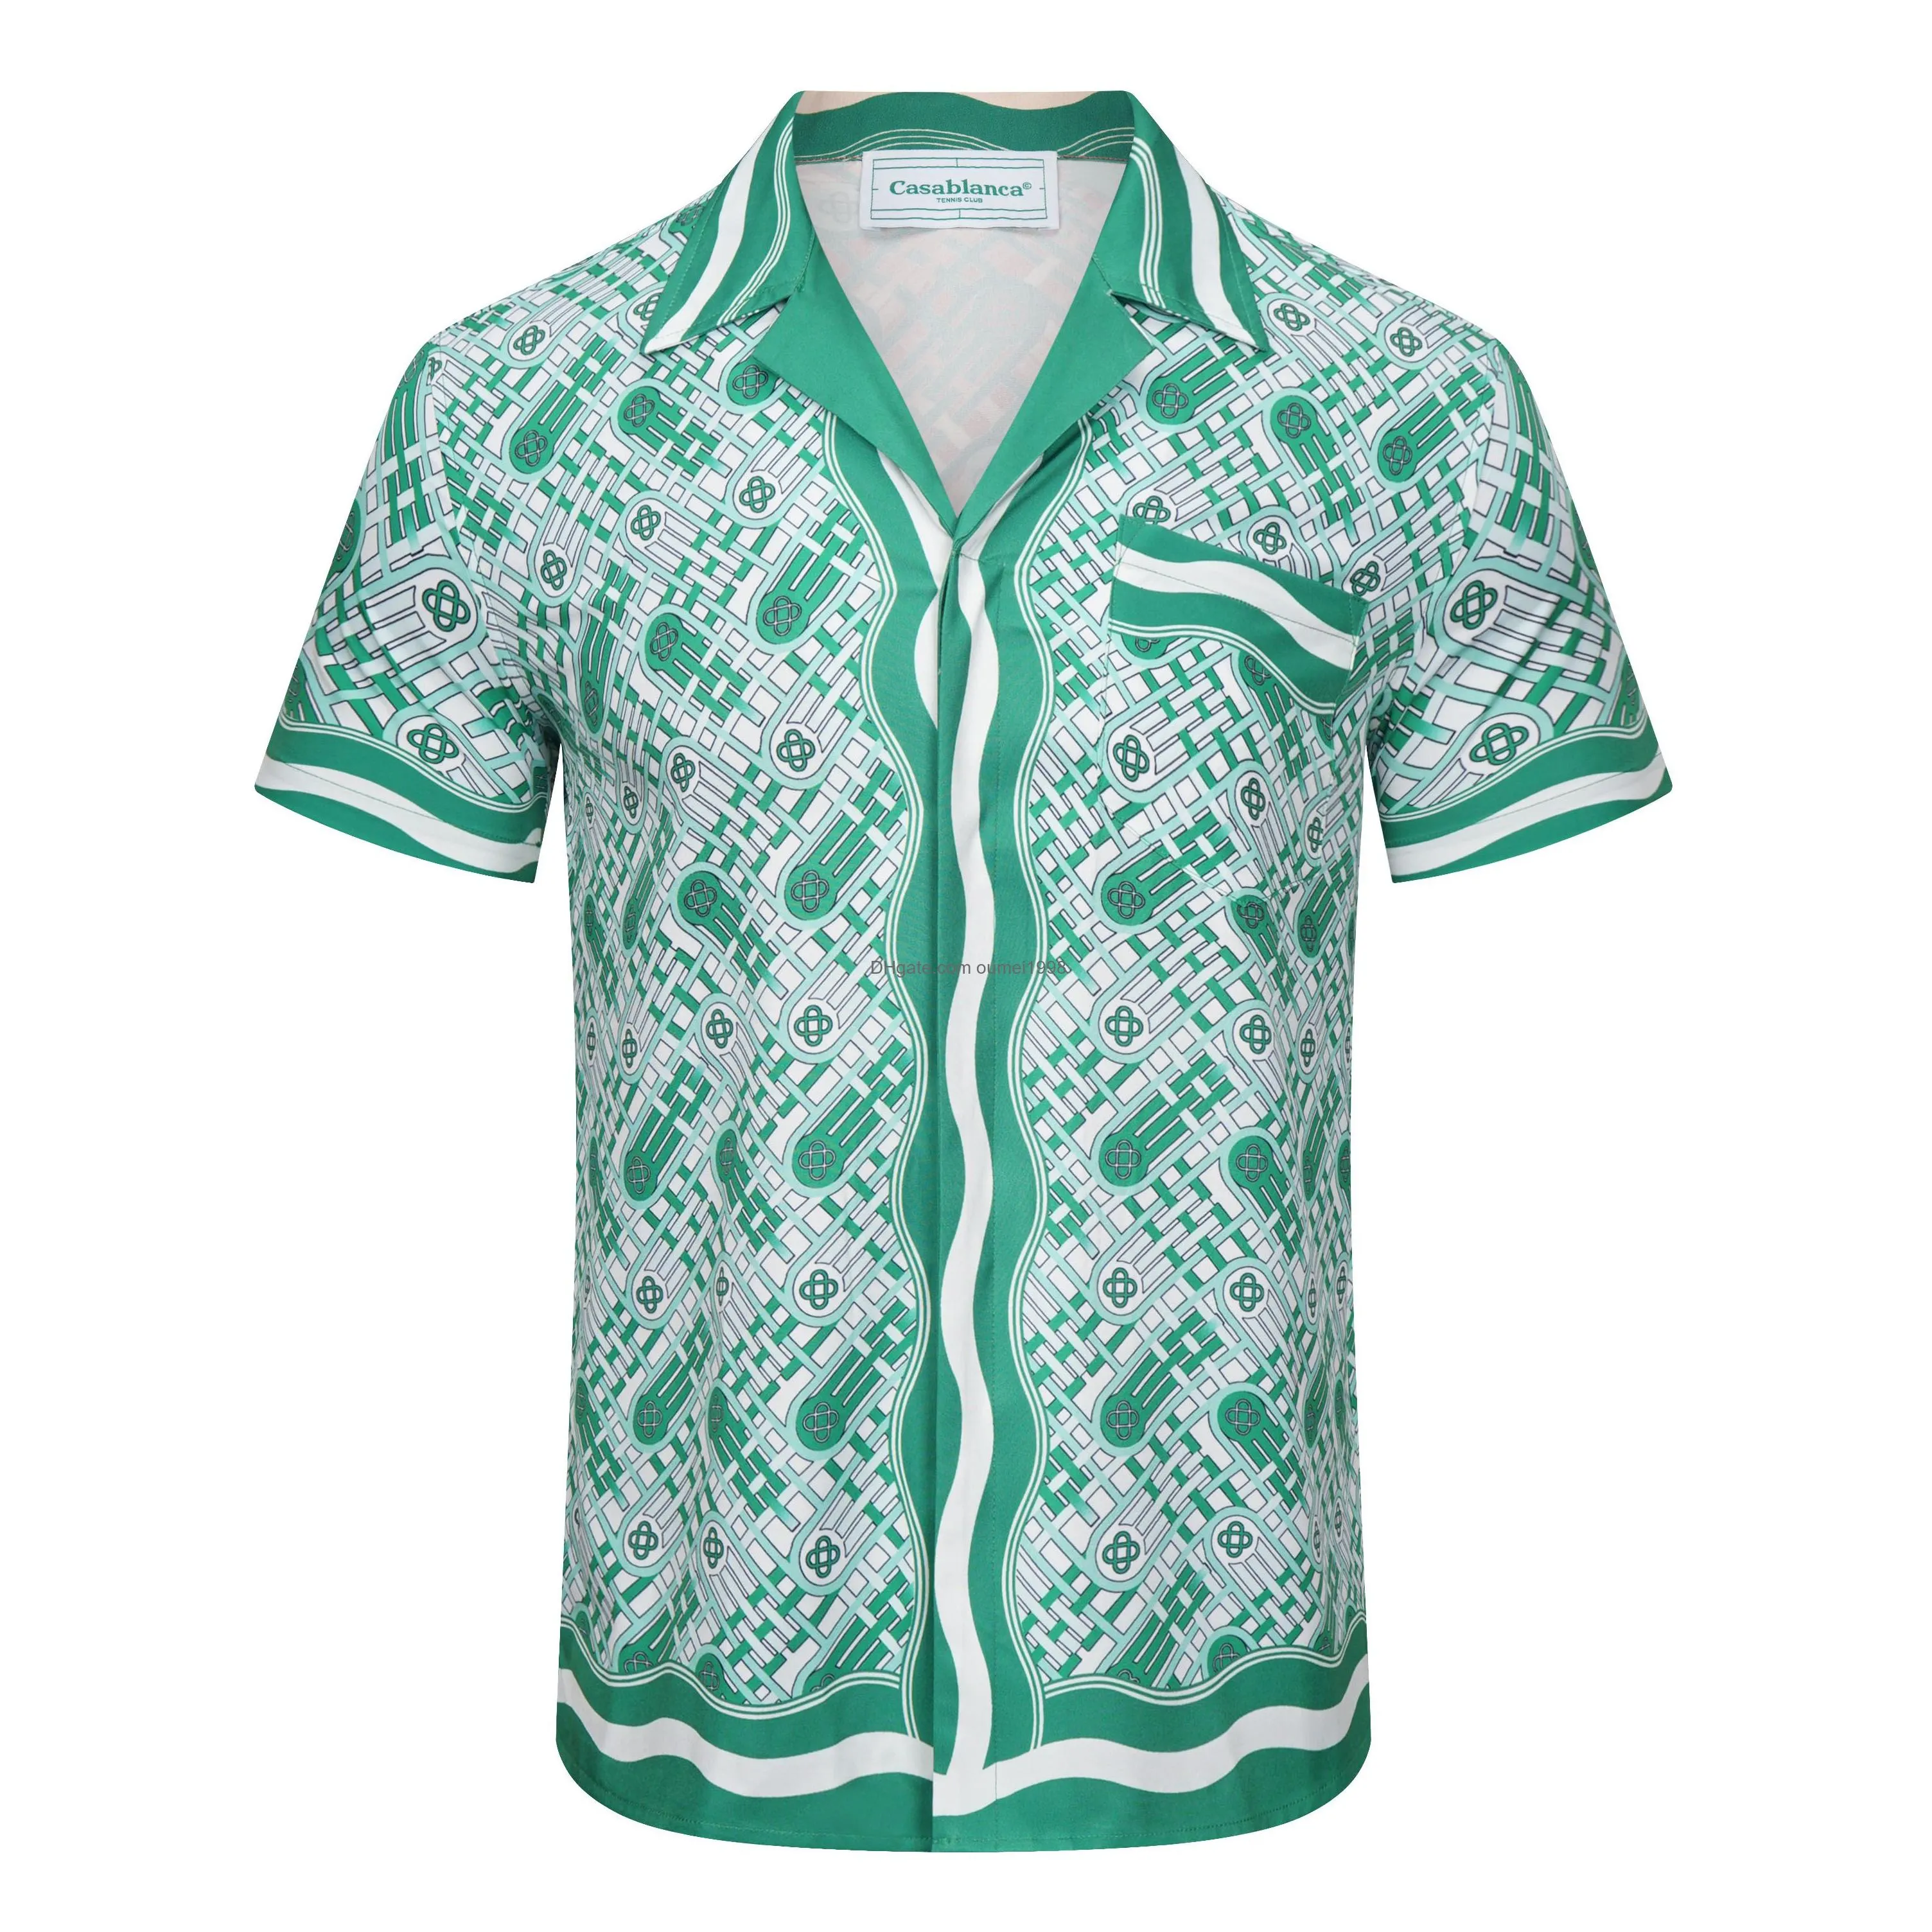 Casablanc Shirt Designer Shirt Men Shirts Casual Breathable thin shirts Fashion comfortable High quality tshirts US Size M-3XL